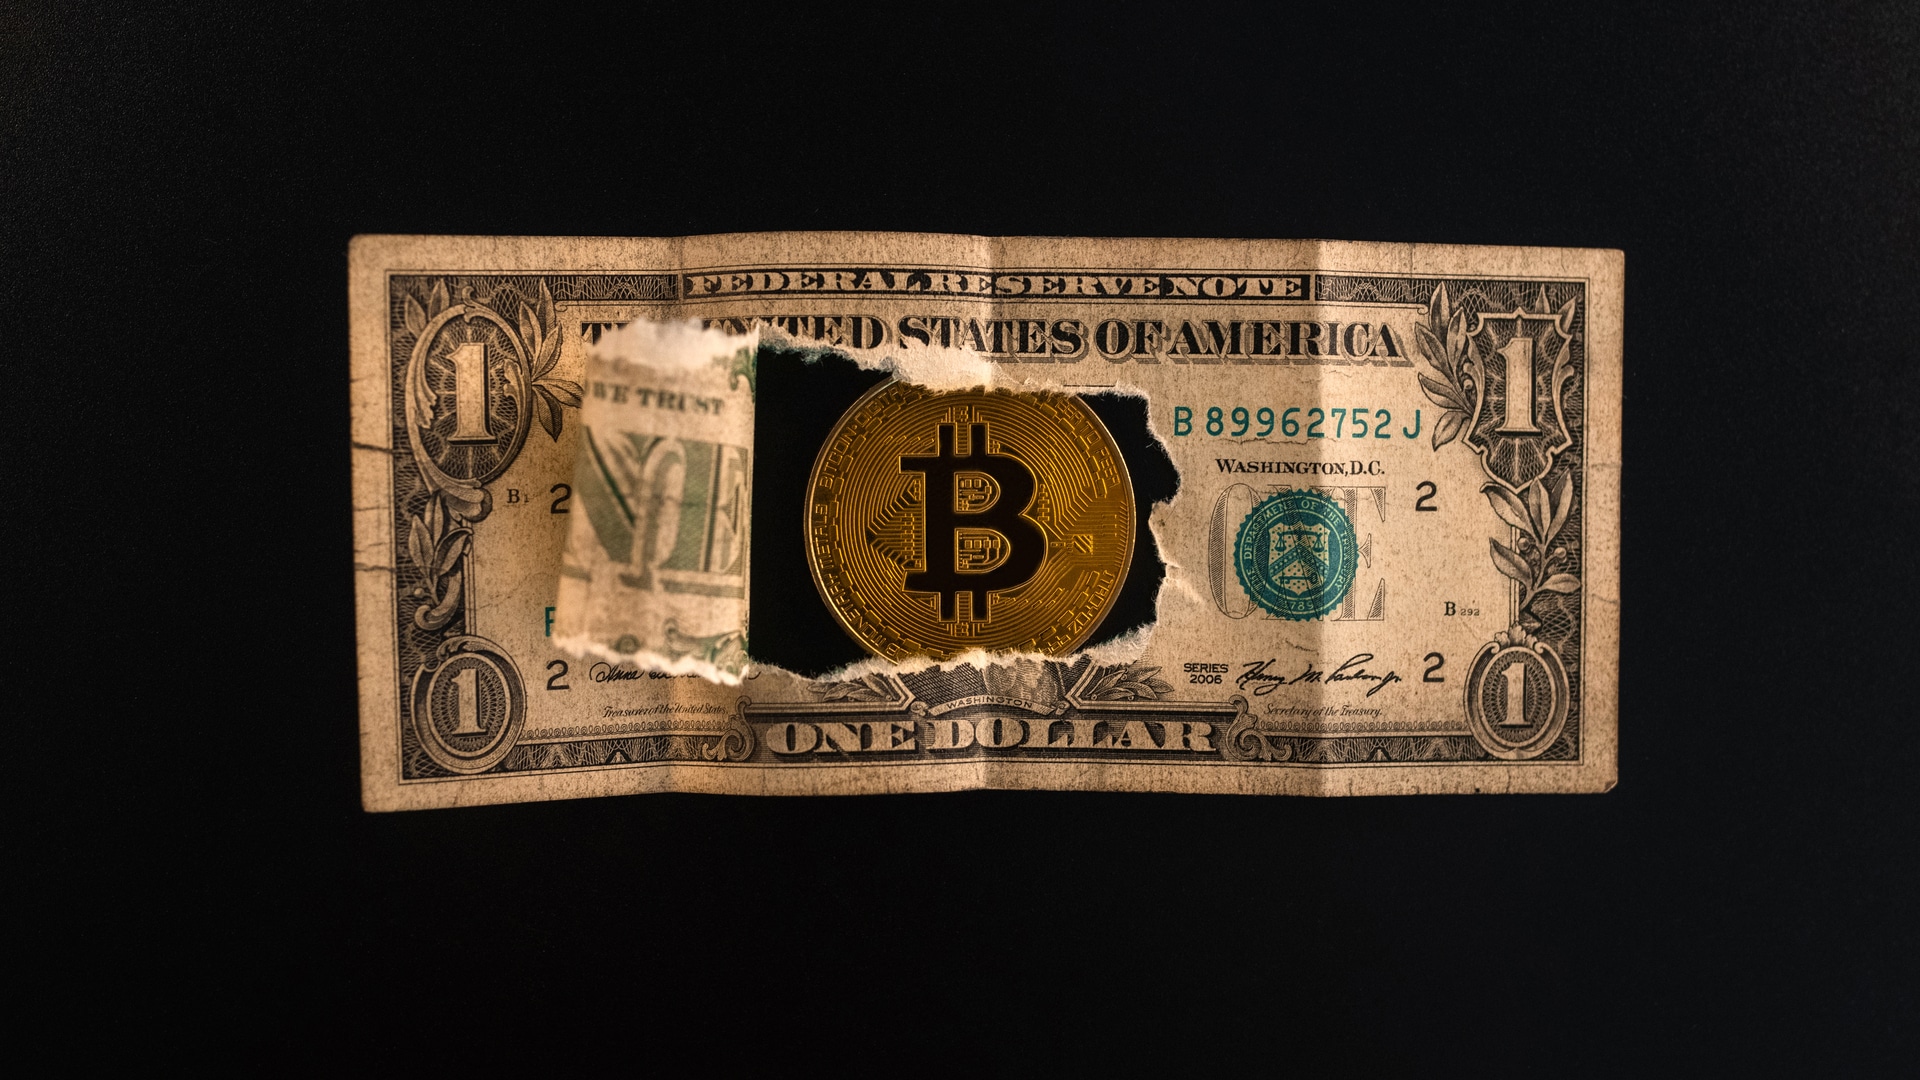 Uma nota de um dólar rasgada através da qual as moedas Bitcoin são visíveis